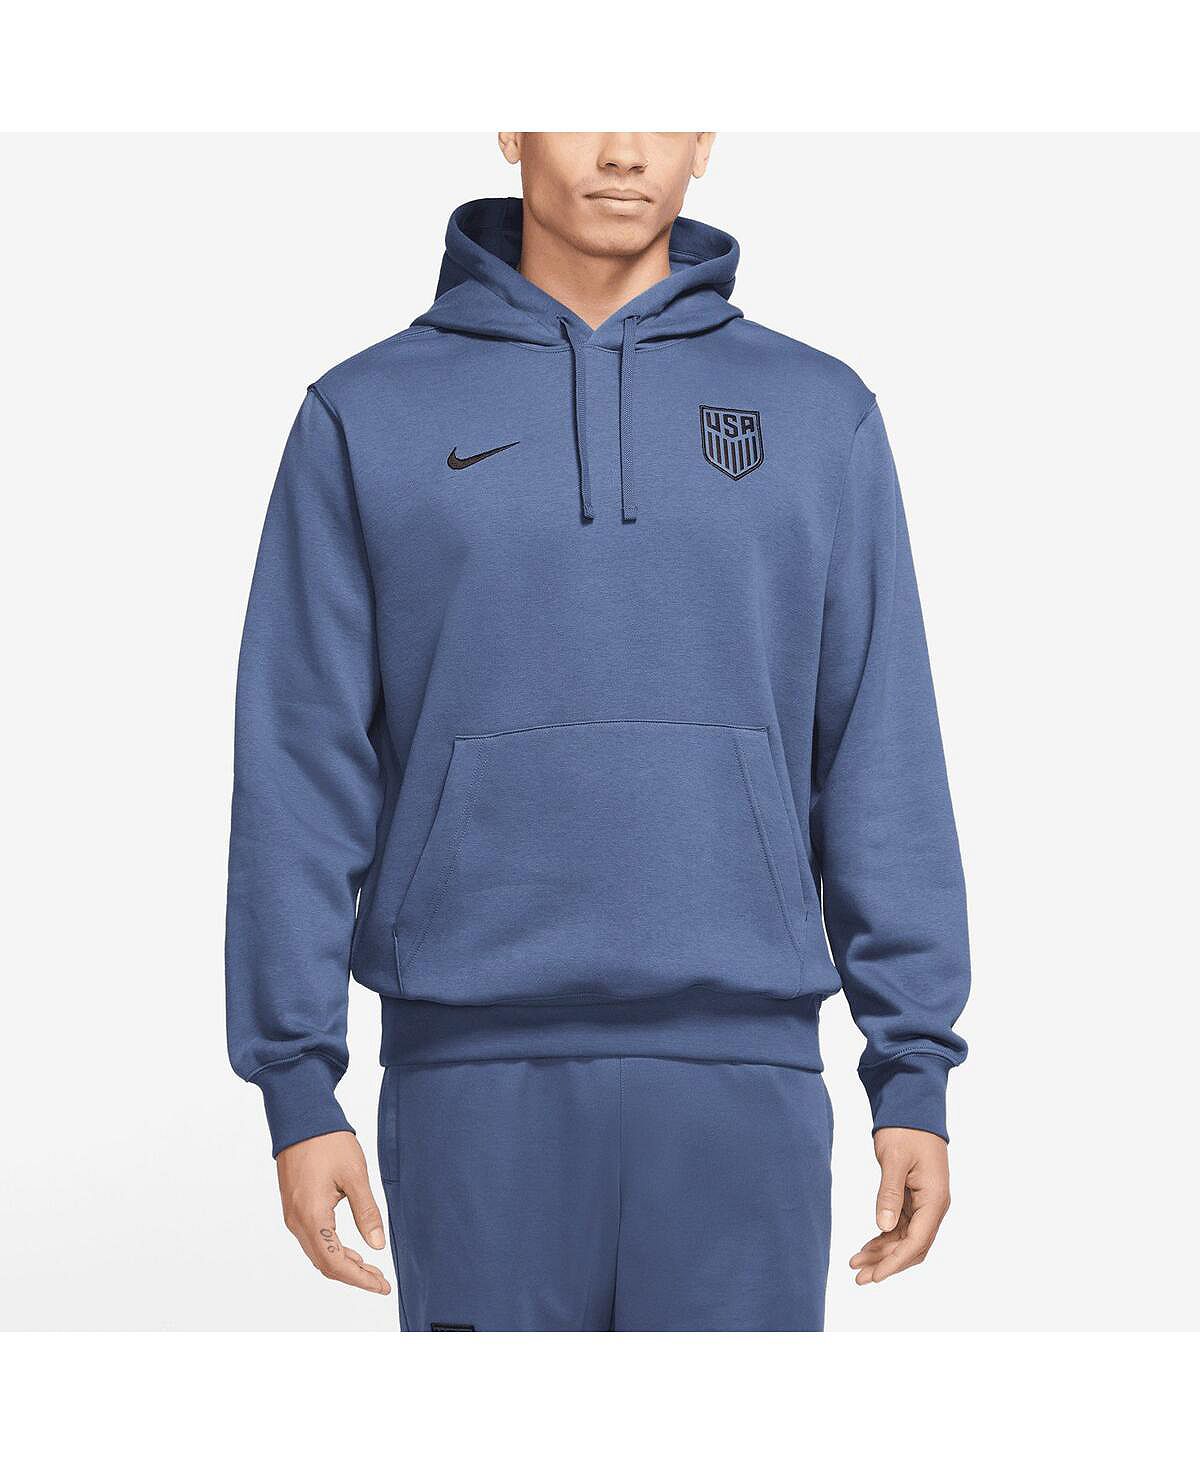 Мужской флисовый пуловер с капюшоном USMNT NSW Club темно-синего цвета Nike